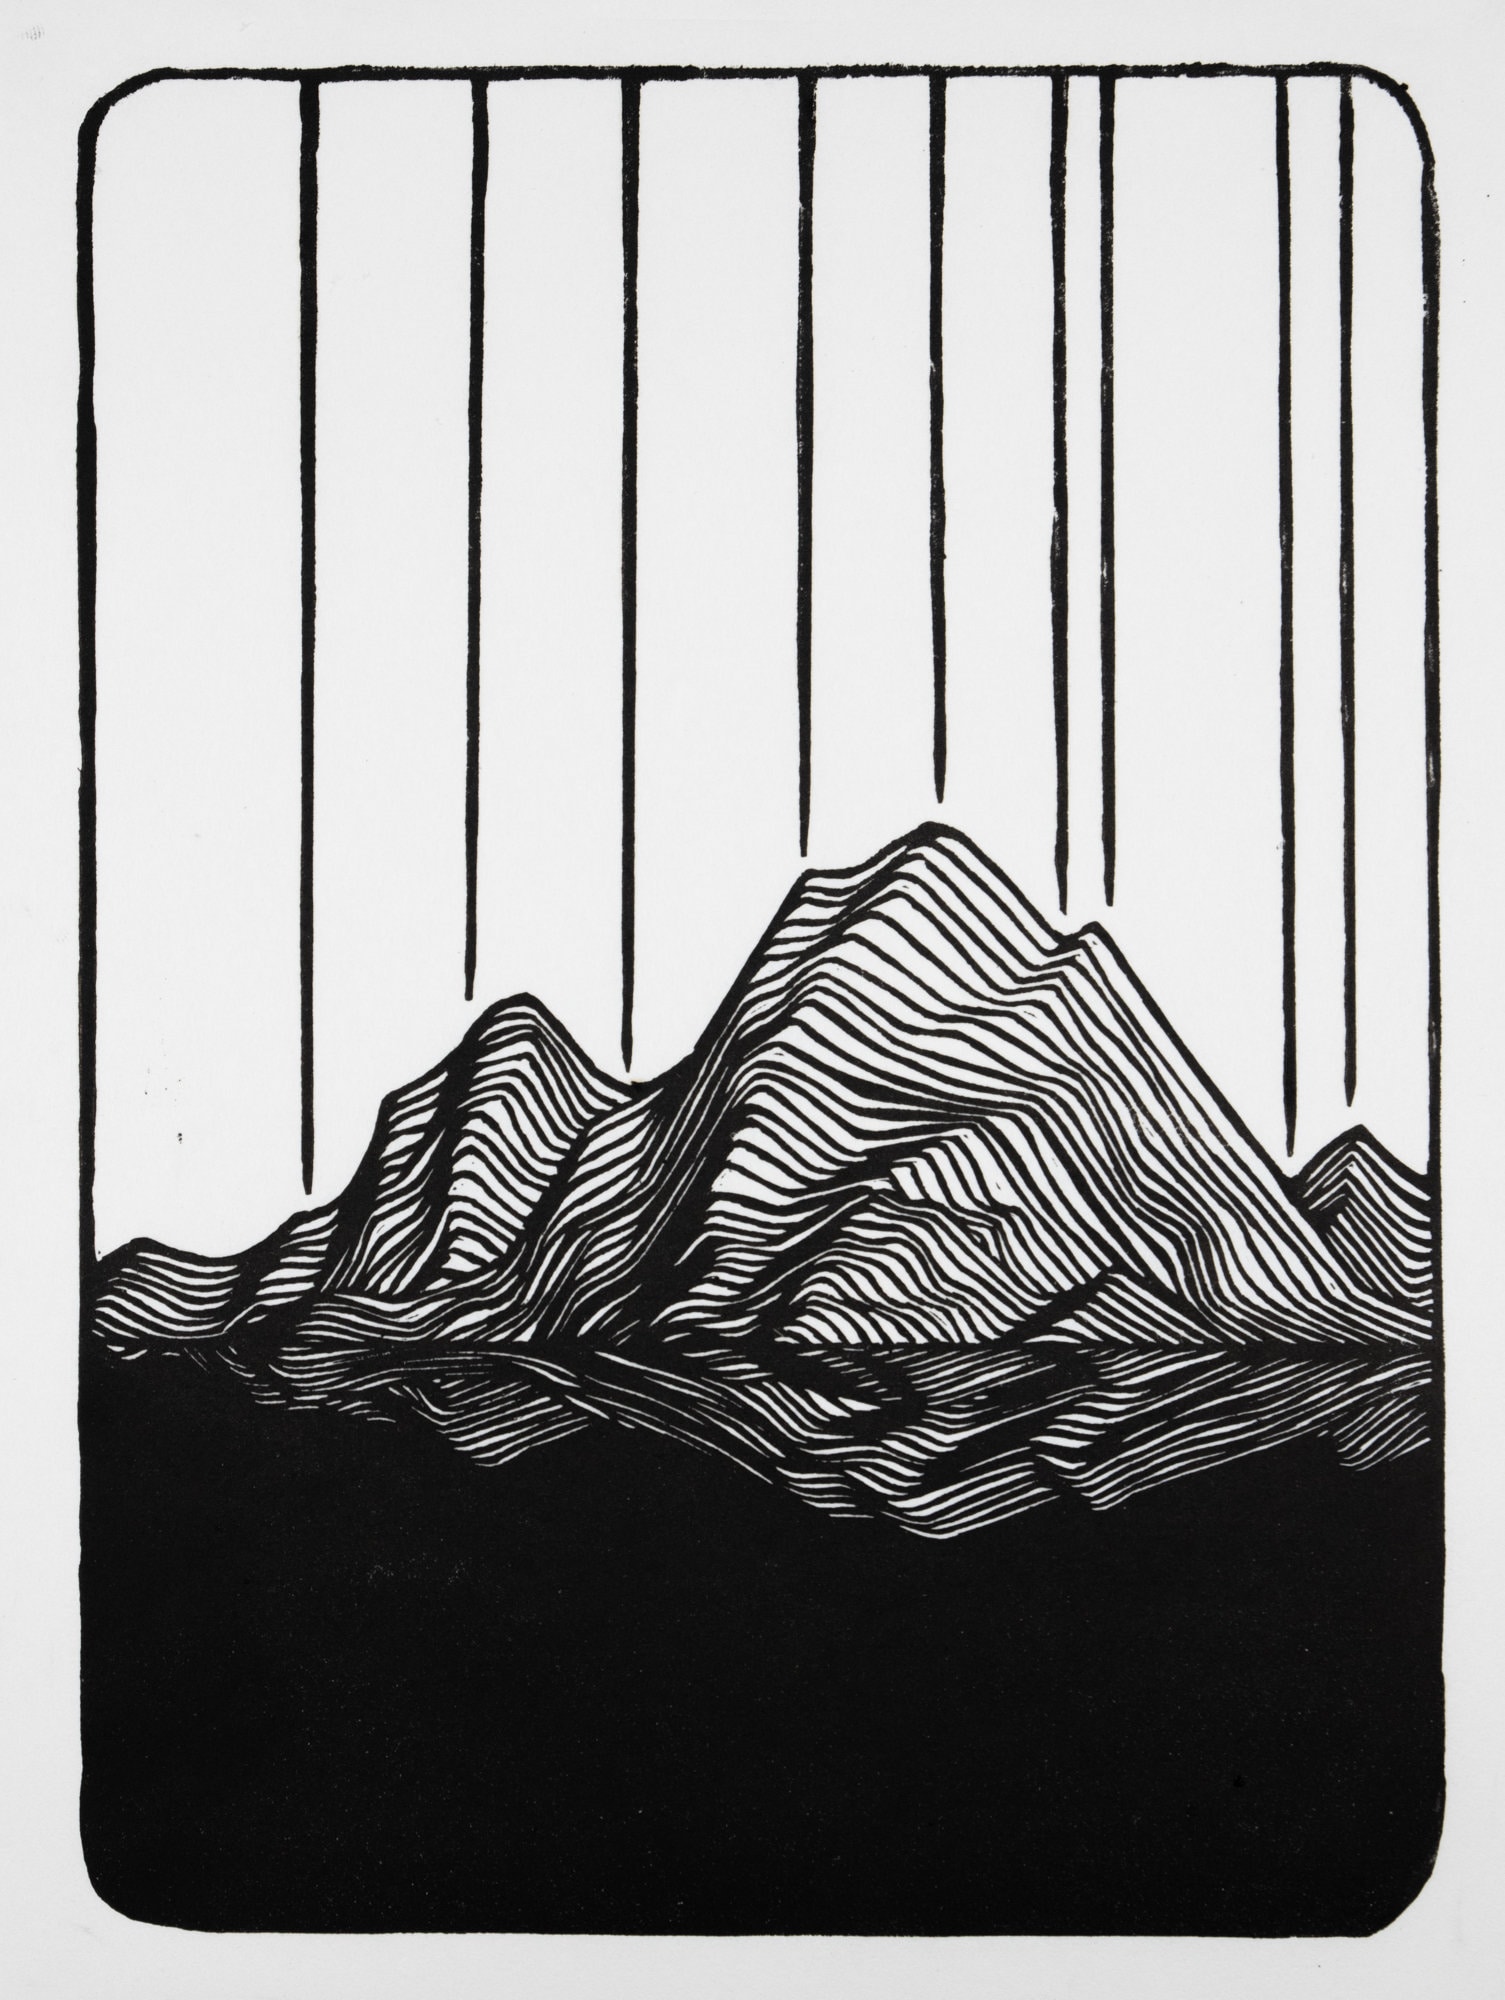 Mountains - Linocut Block Print - Printmaking - Art Print